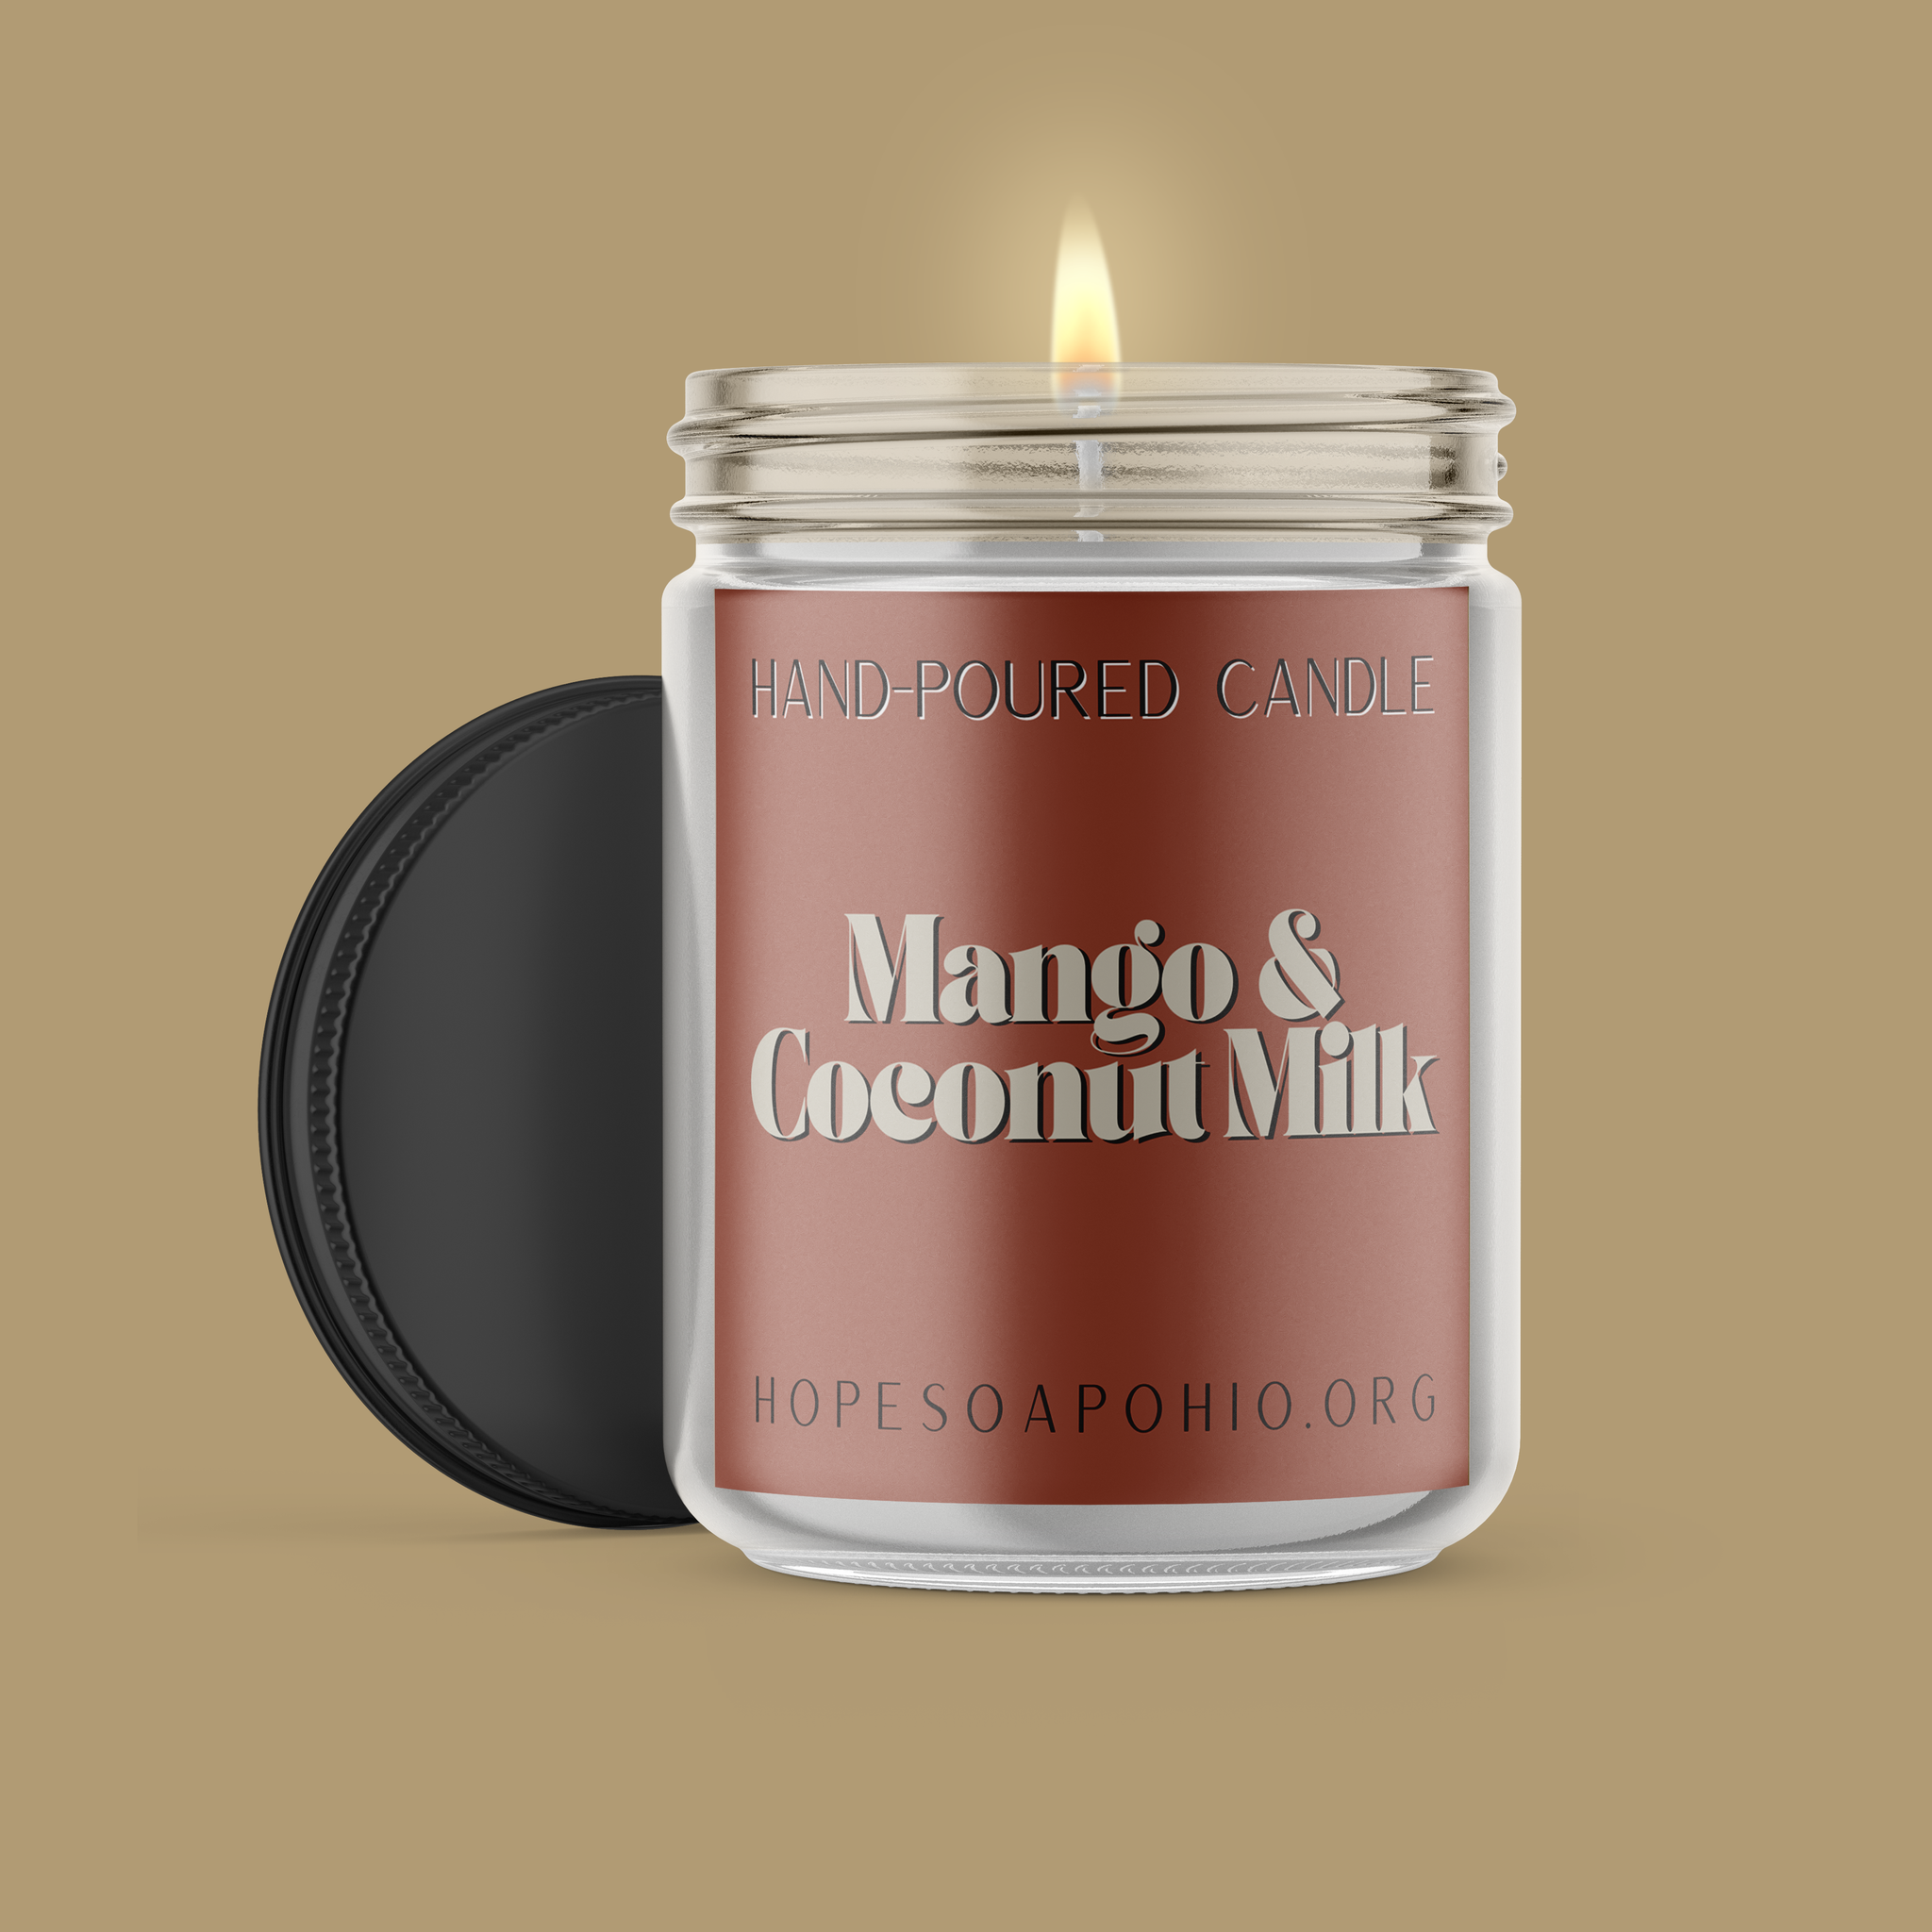 Mango & Coconut Milk Candle - HOPESOAPOHIO